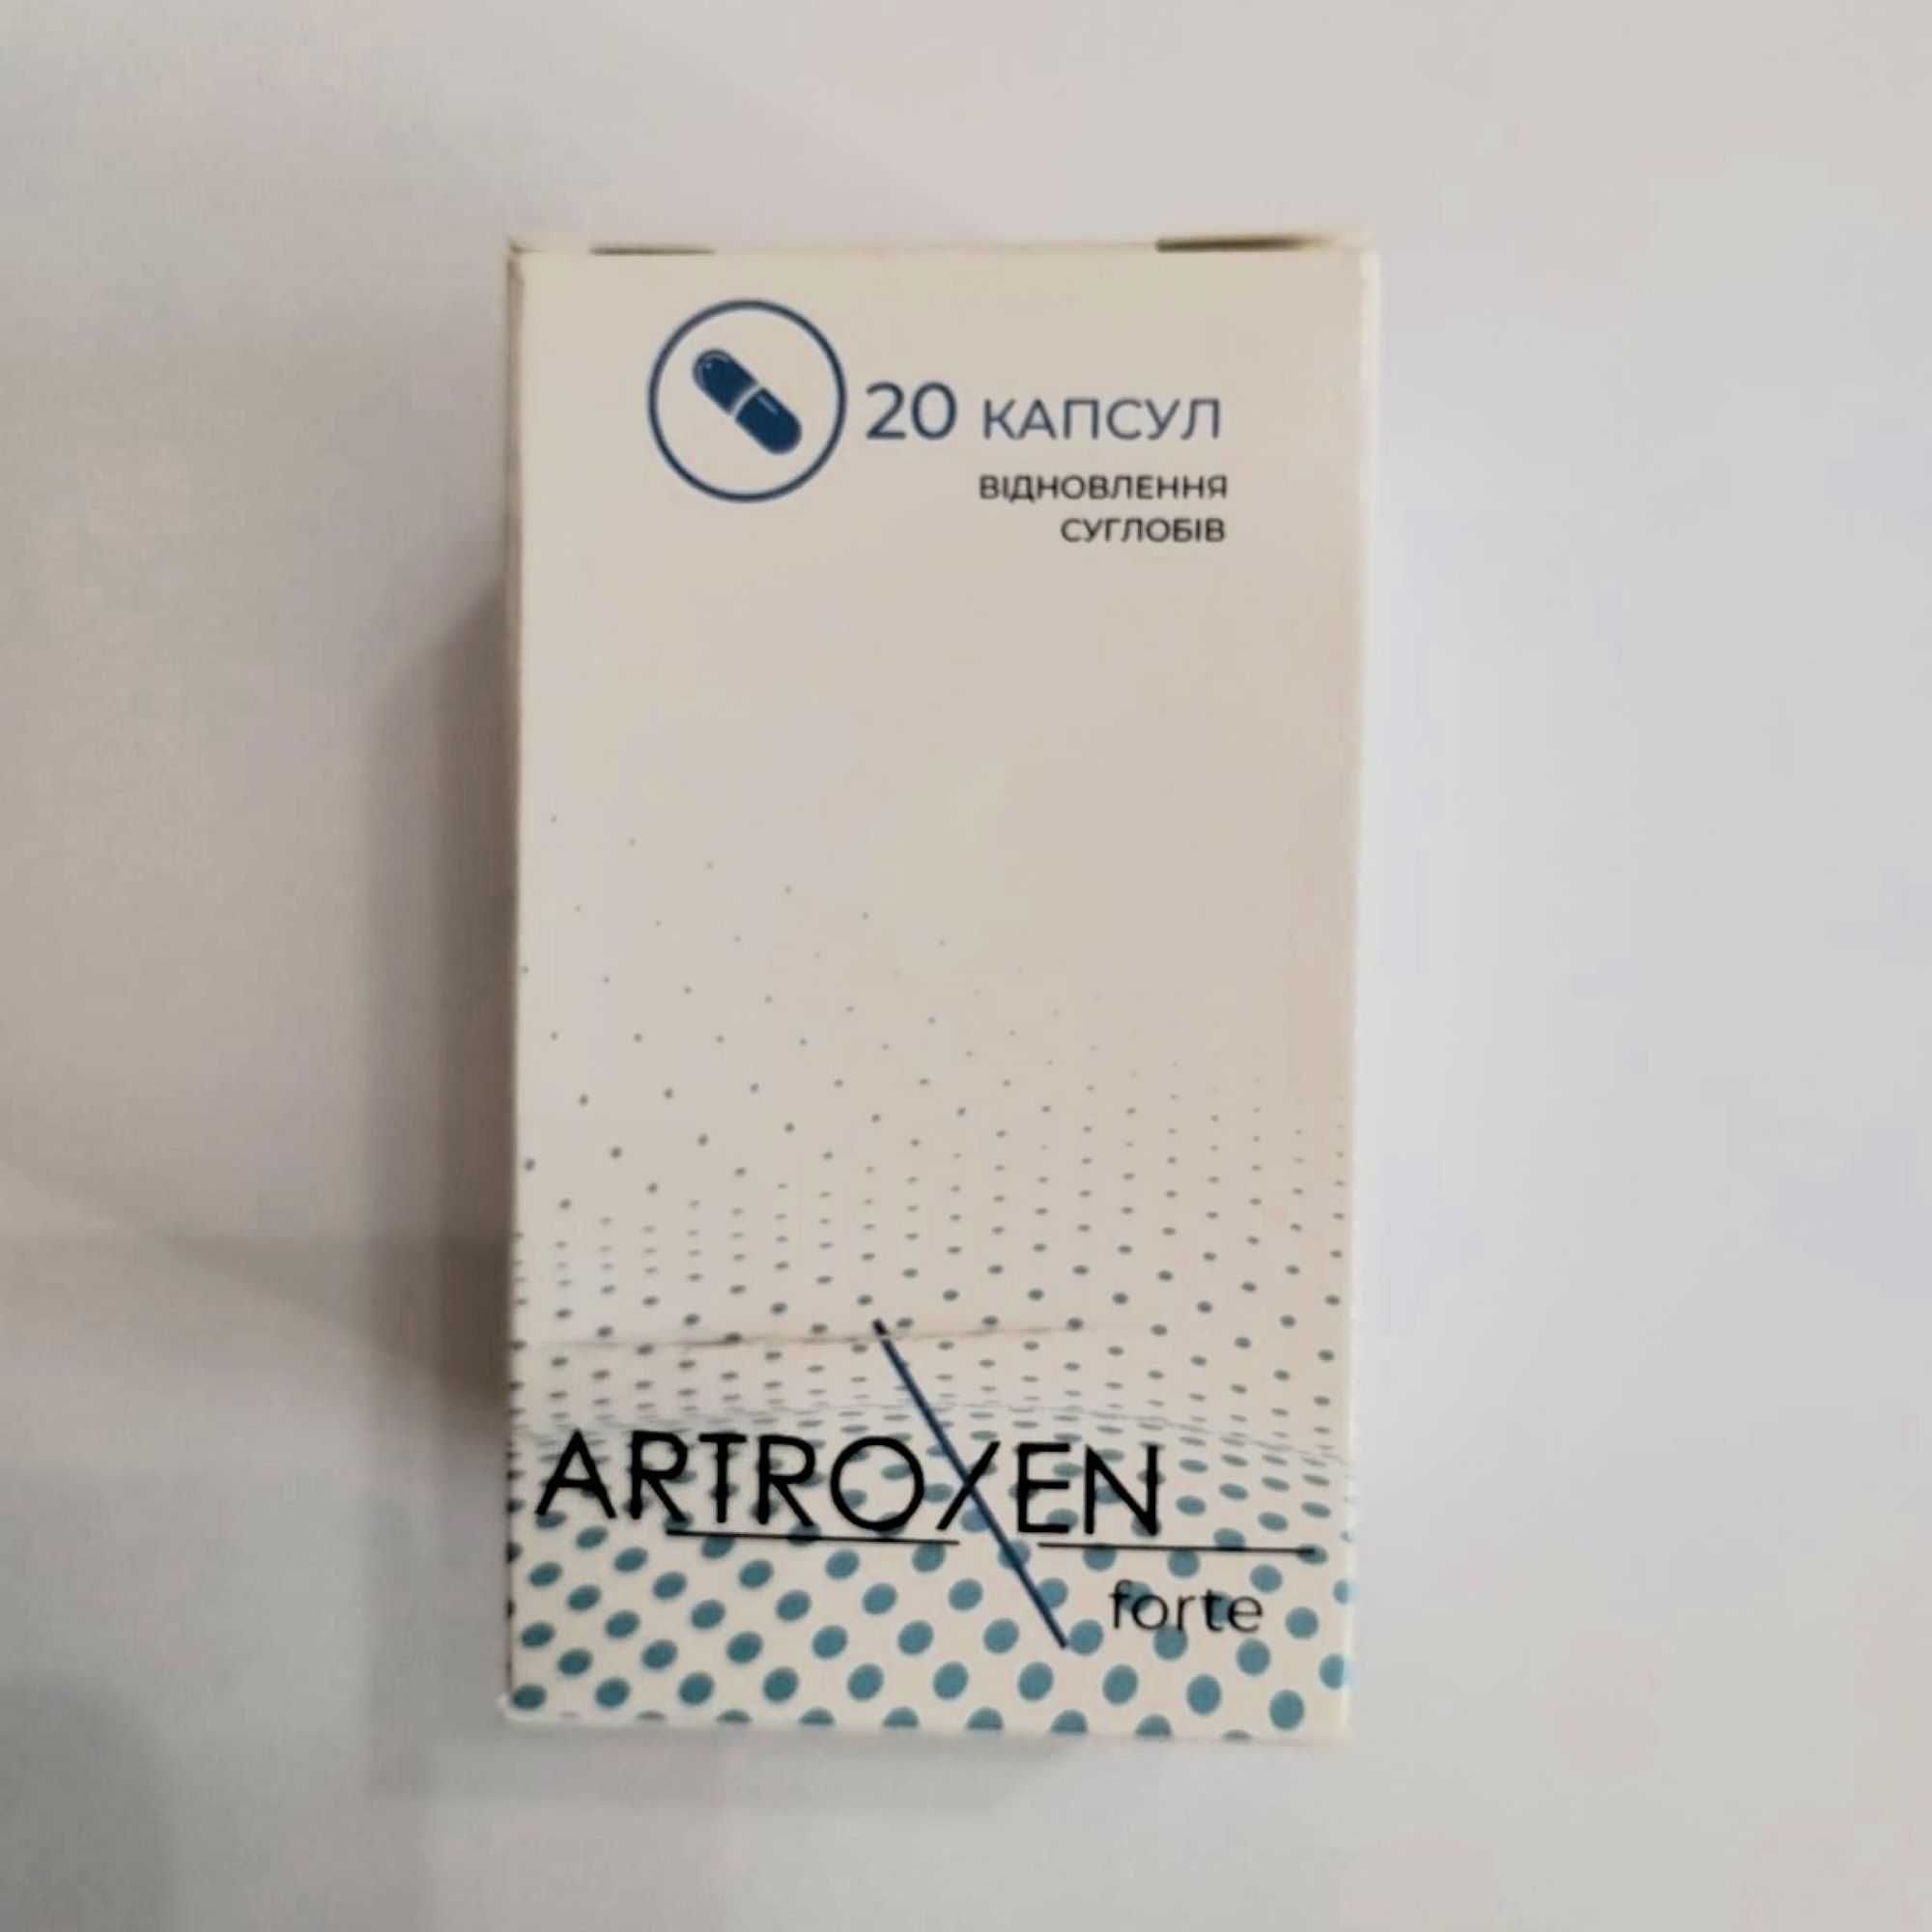 Artroxen forte для суглобів, 20 капсул